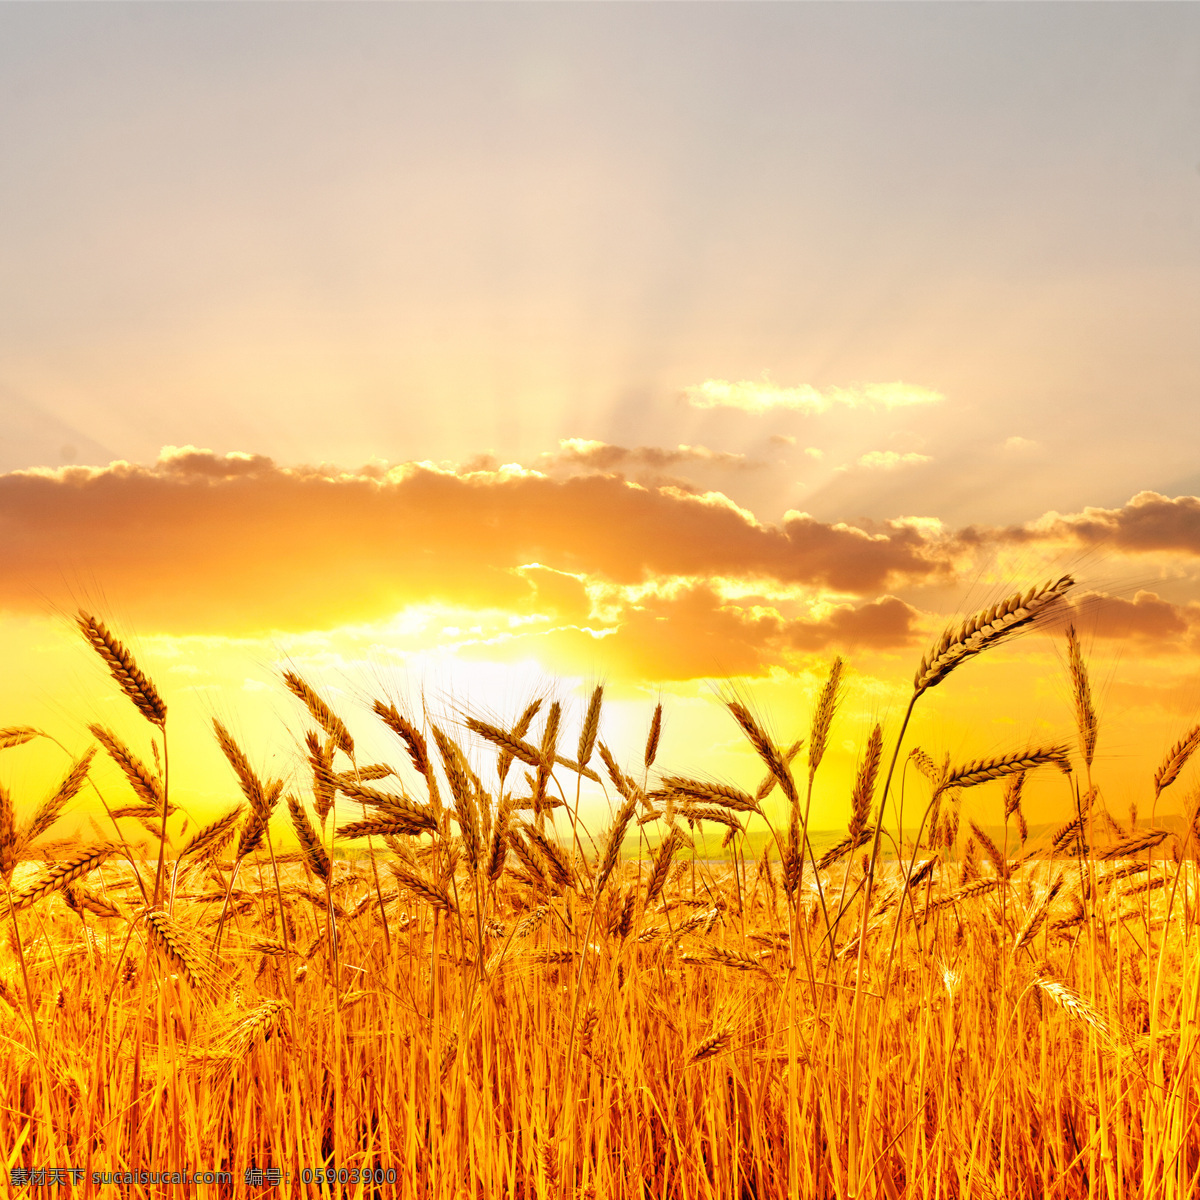 金黄 黄 麦田 风景 进 黄黄 小麦 食物 自然风景 夕阳 麦田景色 山水风景 风景图片